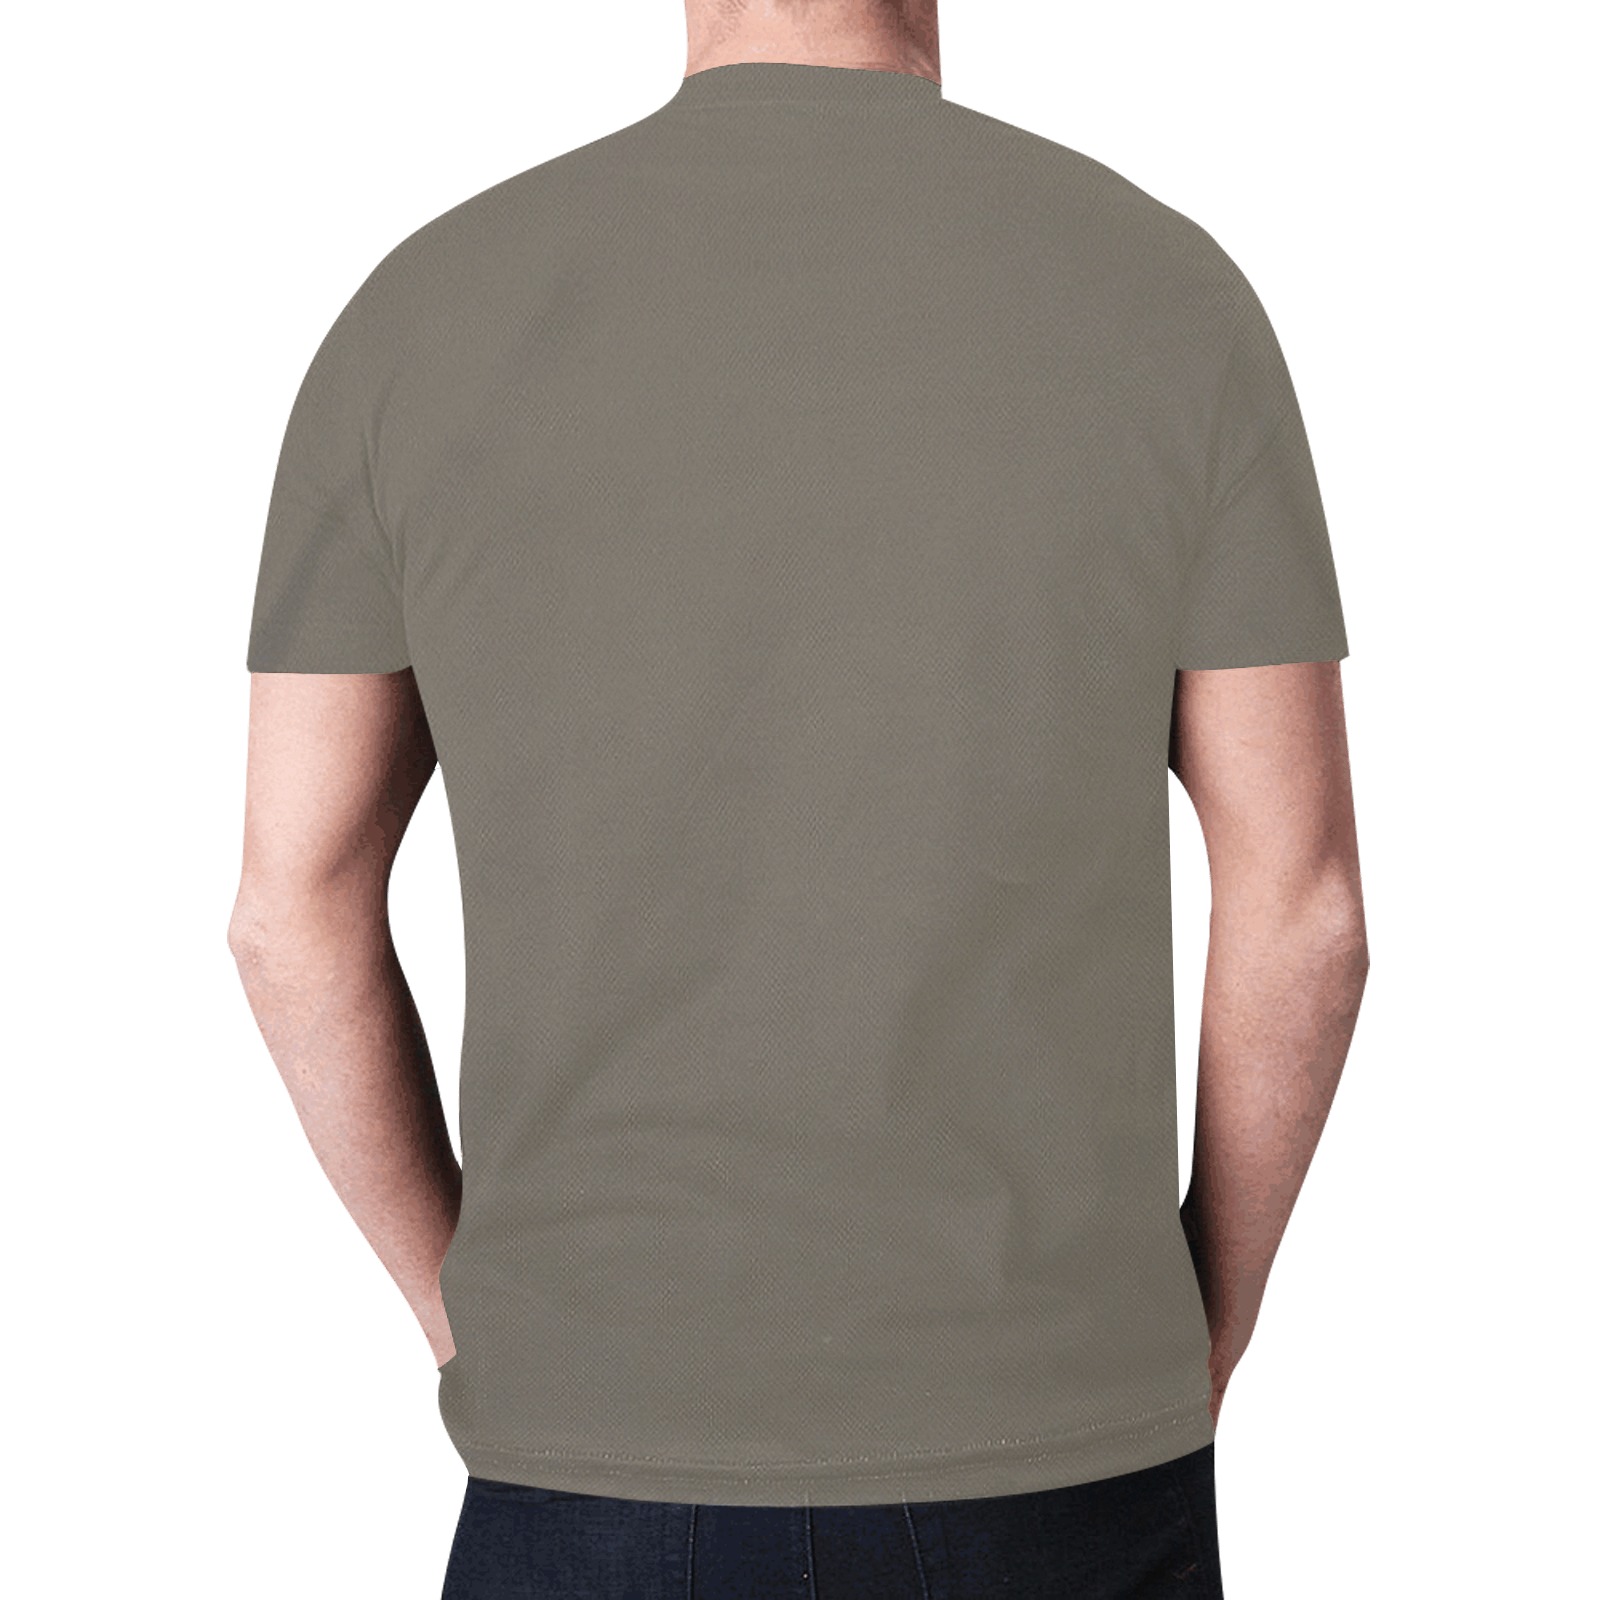 He is Risen New All Over Print T-shirt for Men (Model T45)